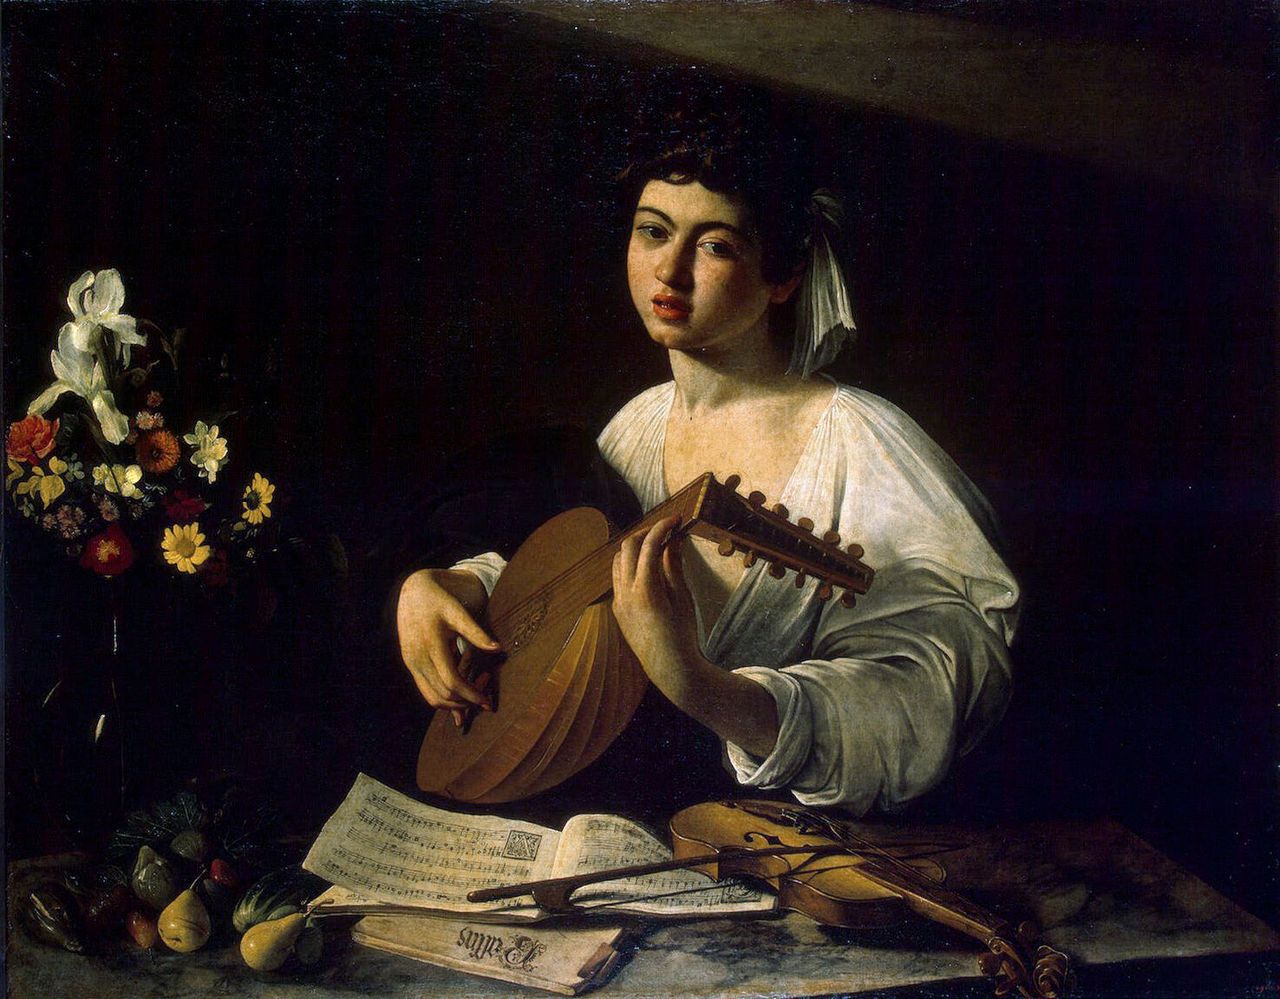 En este cuadro famoso de Carvaggio, el laudista está leyendo música de Arcadelt.